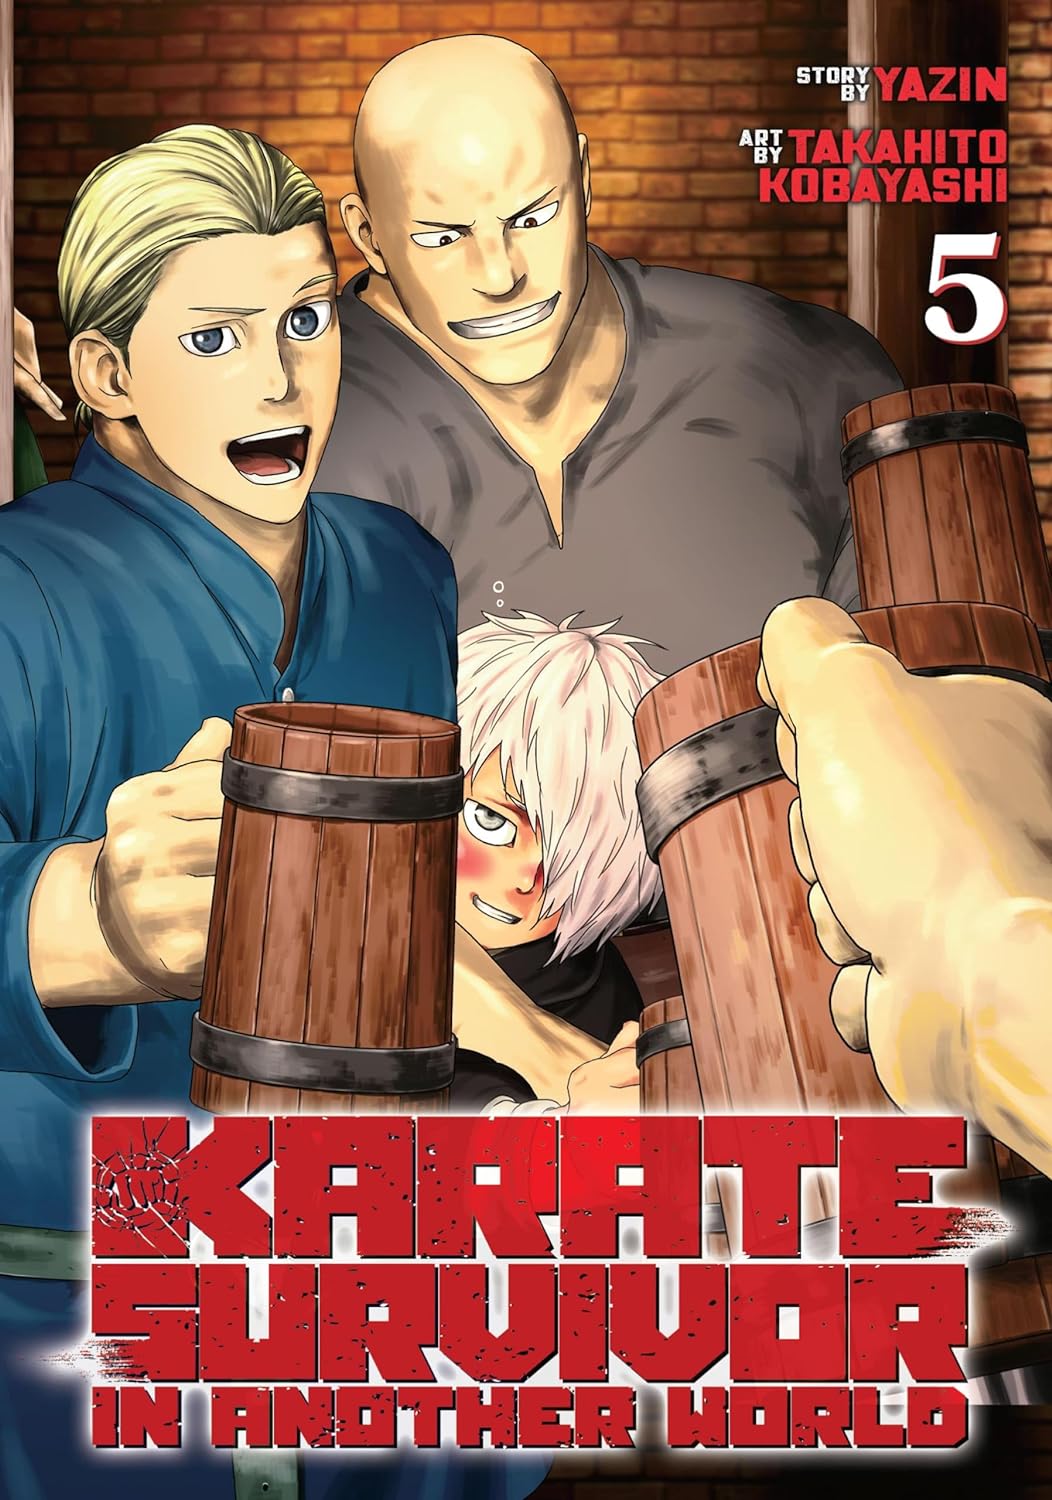 Karate Survivor in Another World (Manga) Vol. 05